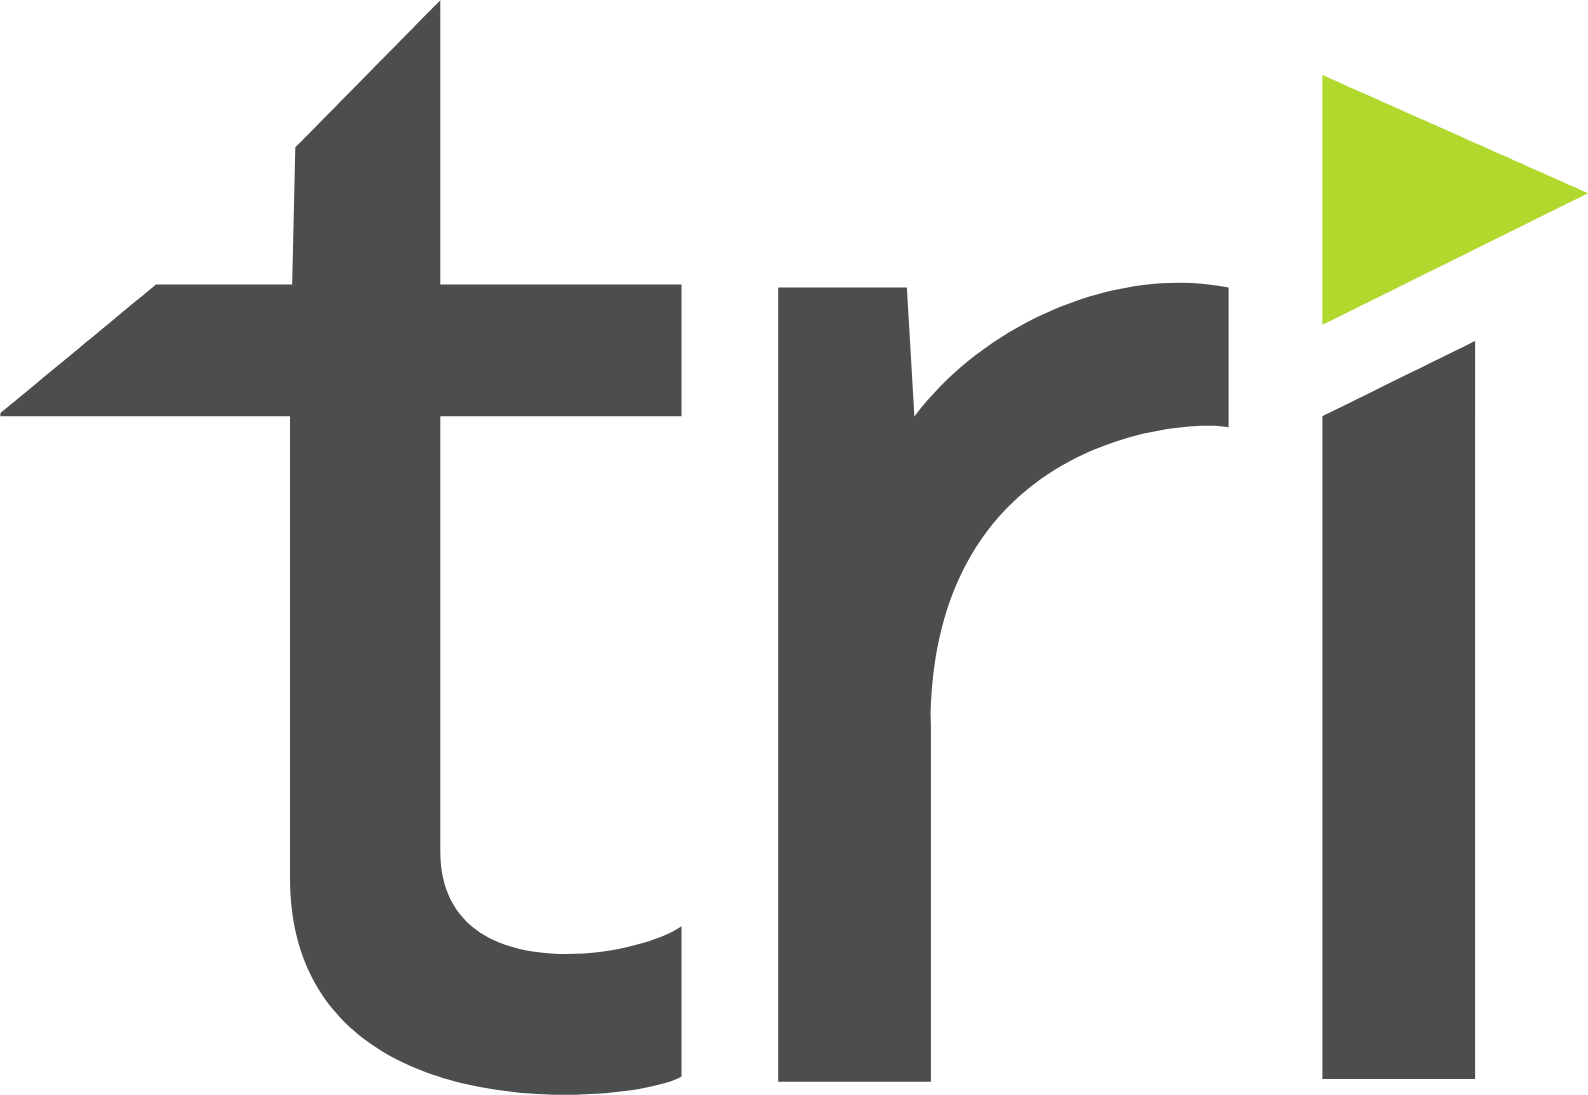 Tri Pointe Homes logo (PNG transparent)